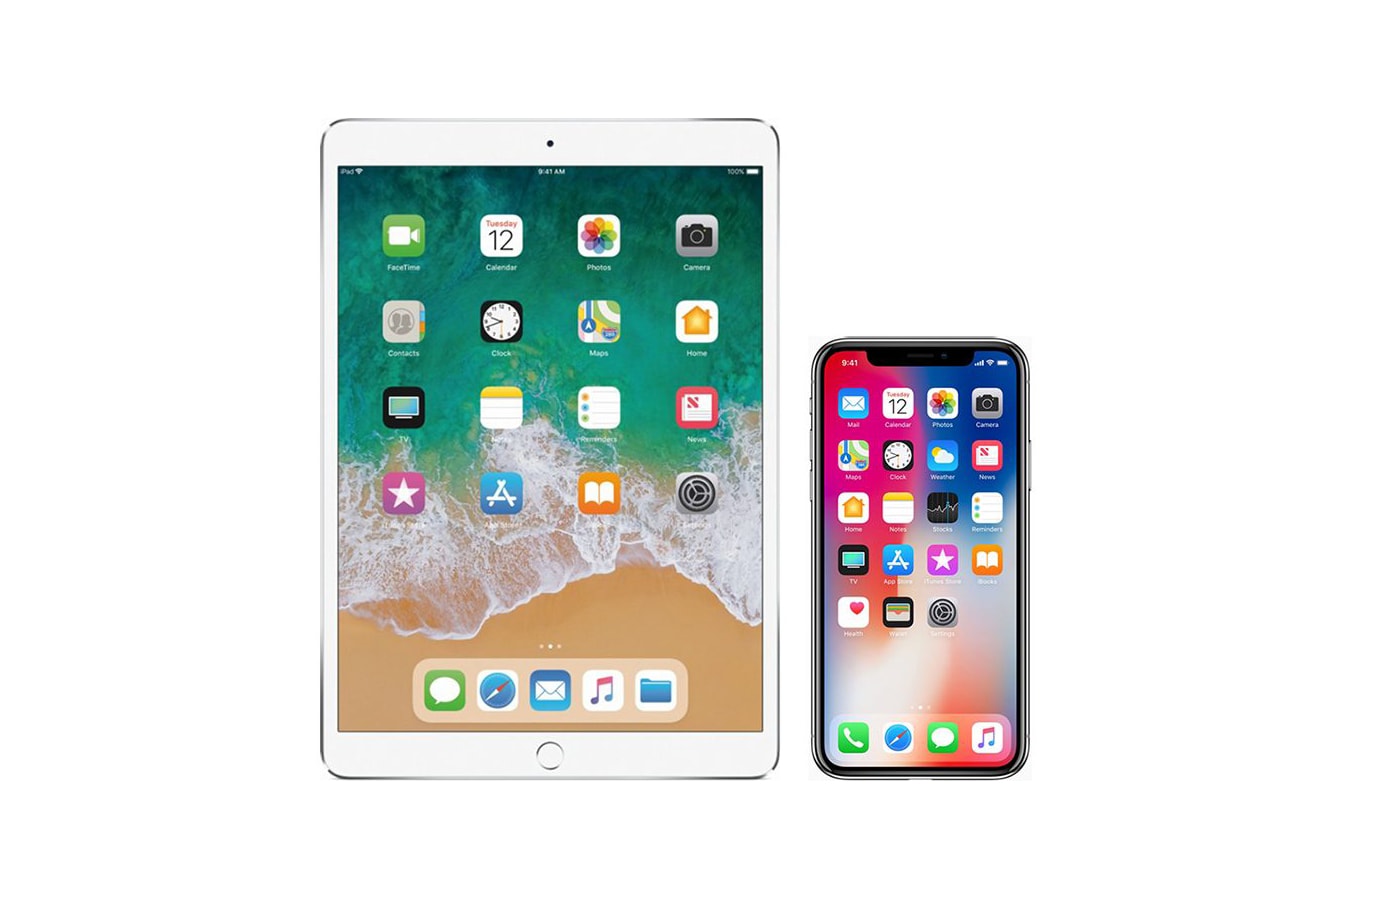 Apple iPhone X 及 iPad Pro 奪得 2018 年度最佳屏幕顯示獎